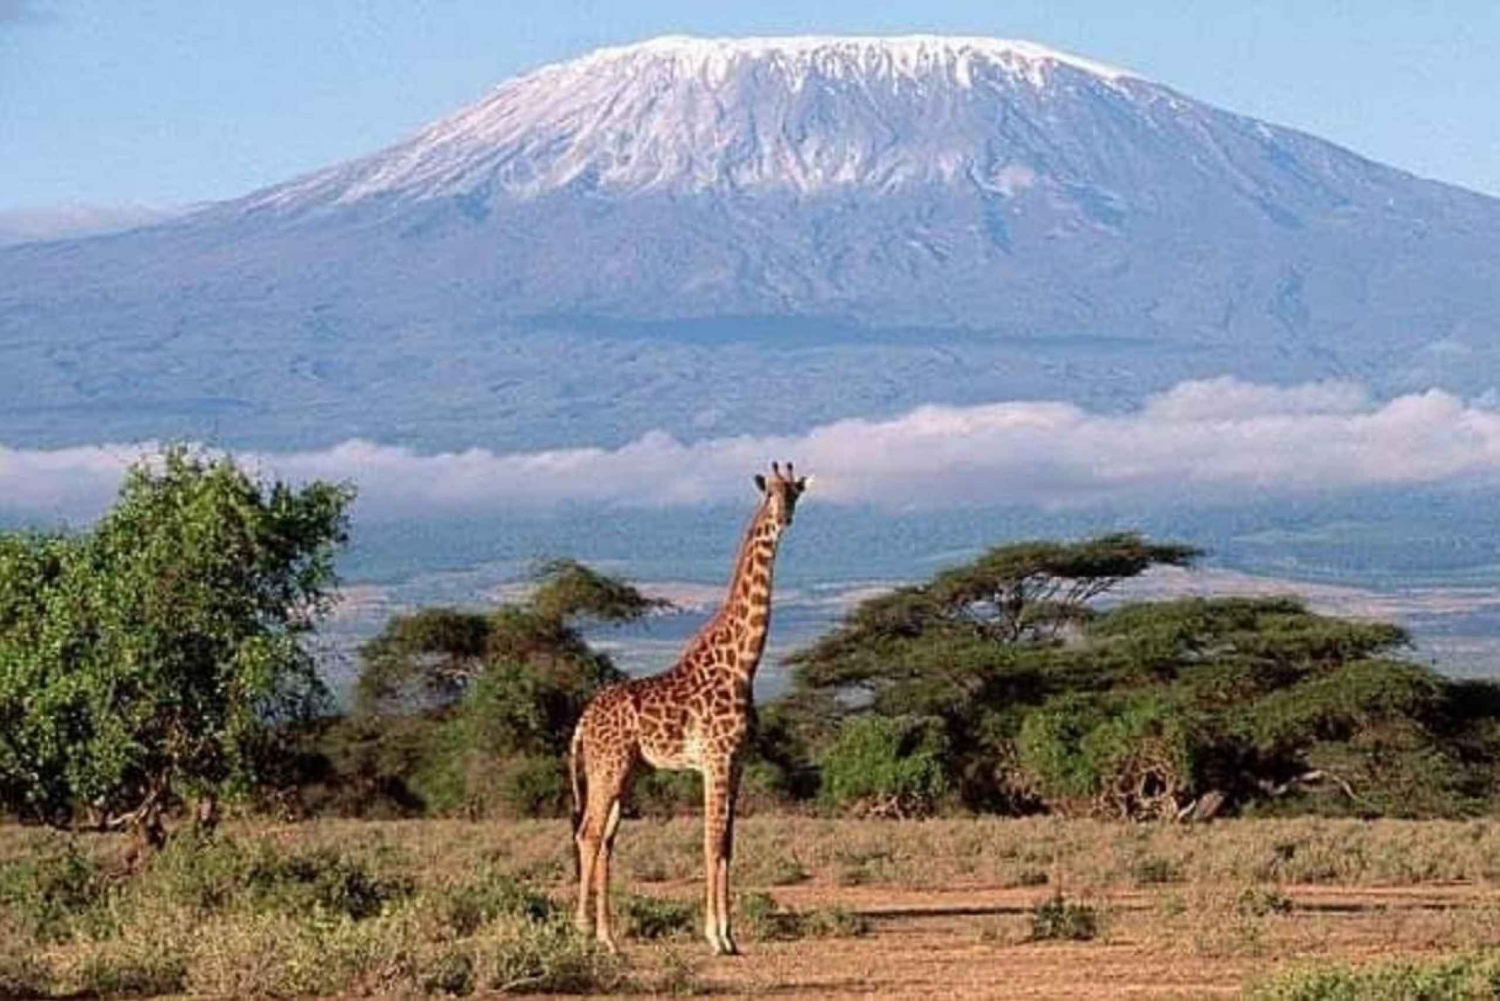 Päiväretki Amboselin kansallispuistoon Nairobista käsin